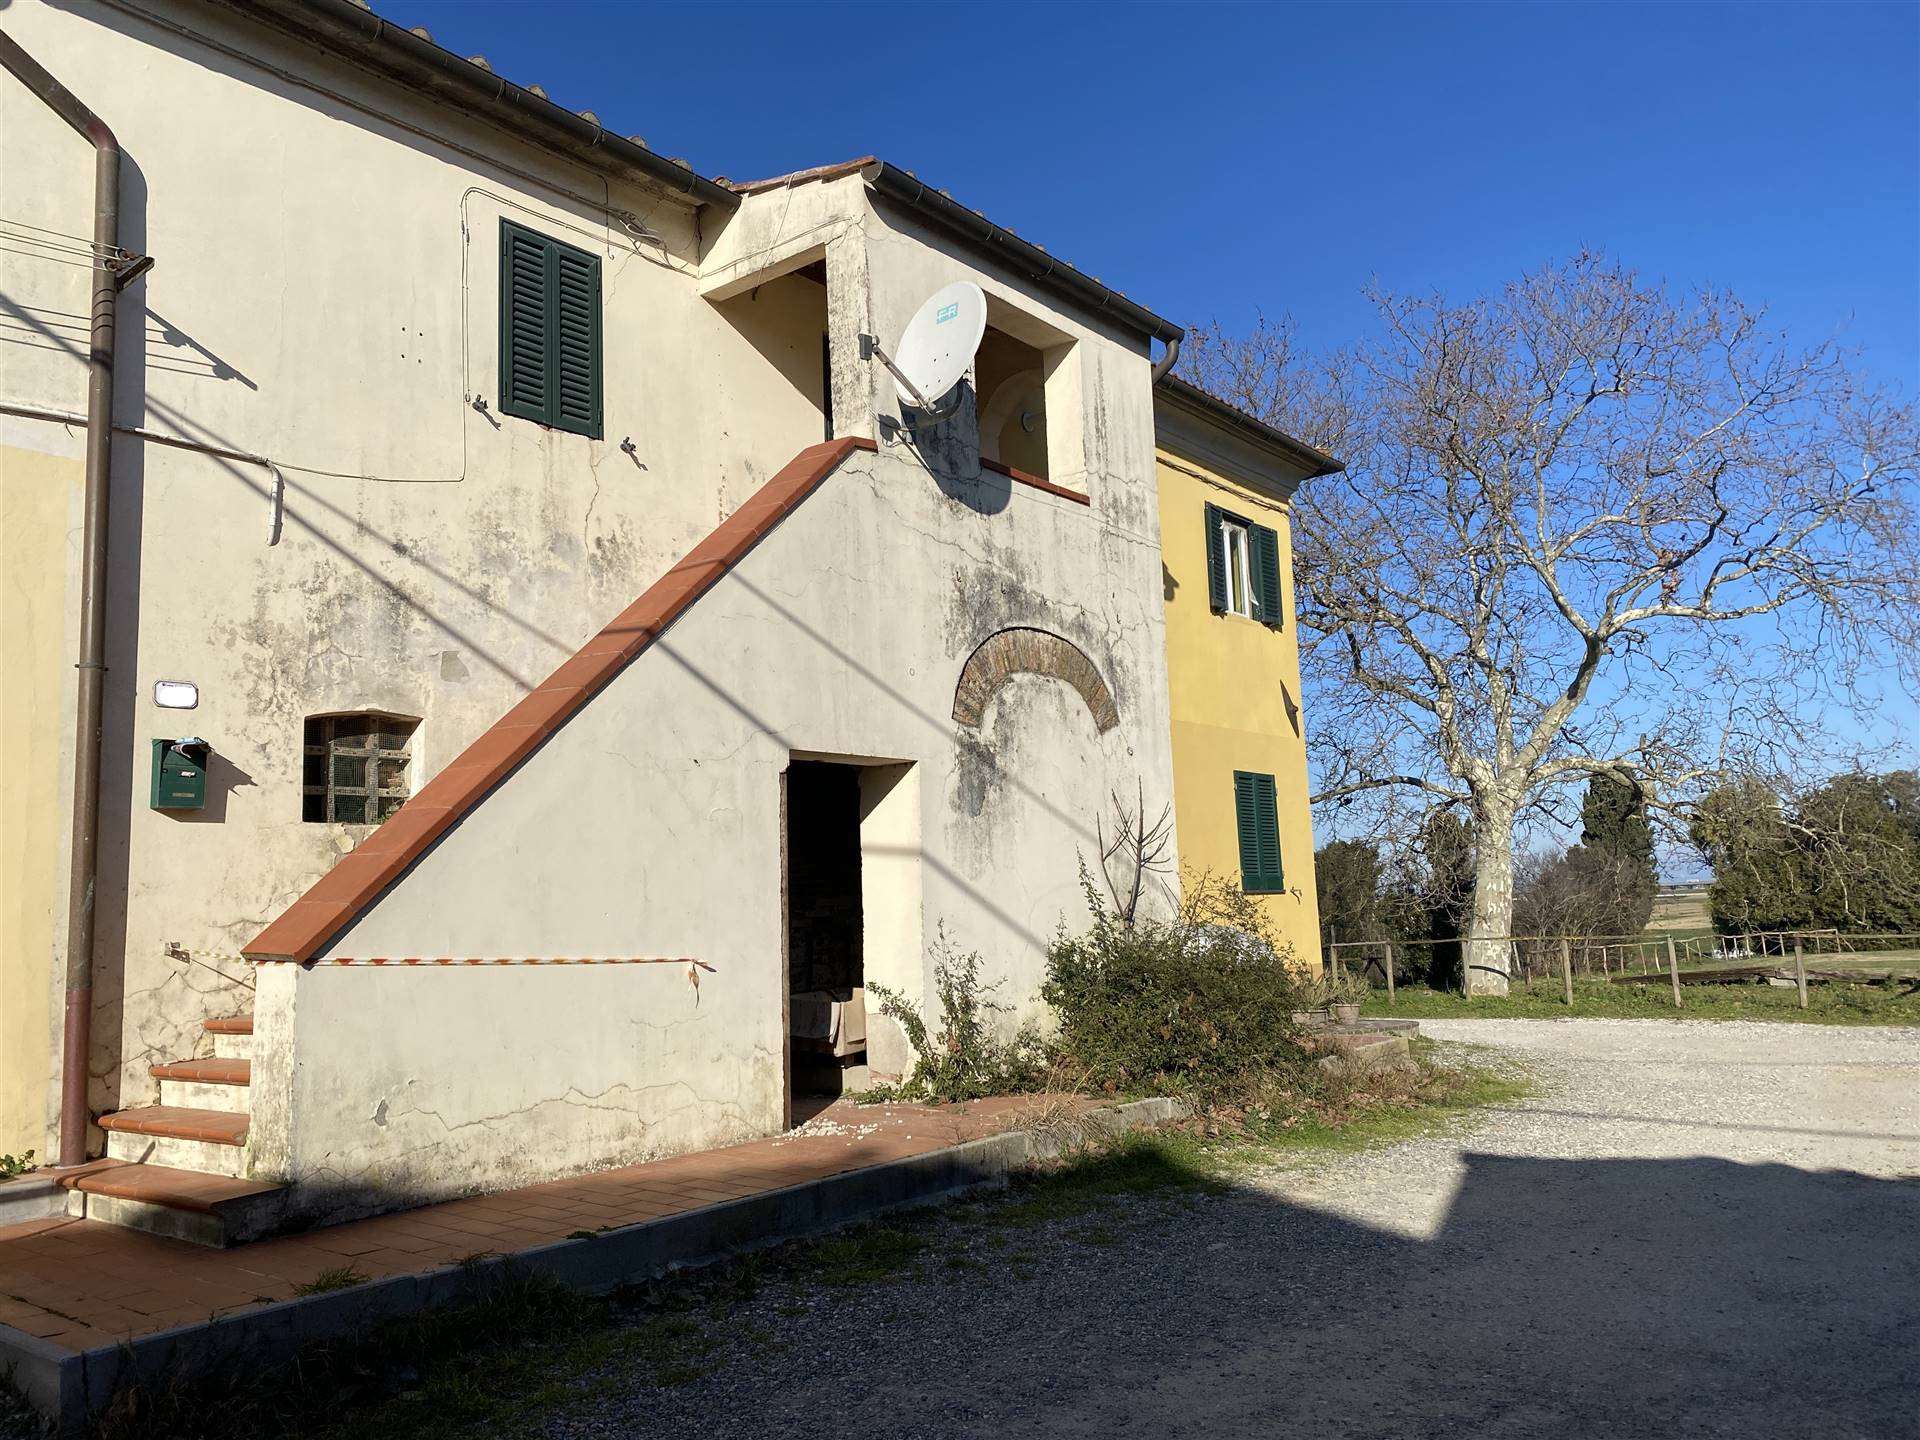 Rustico / Casale in vendita a Collesalvetti, 8 locali, zona Località: MORTAIOLO, prezzo € 138.000 | PortaleAgenzieImmobiliari.it